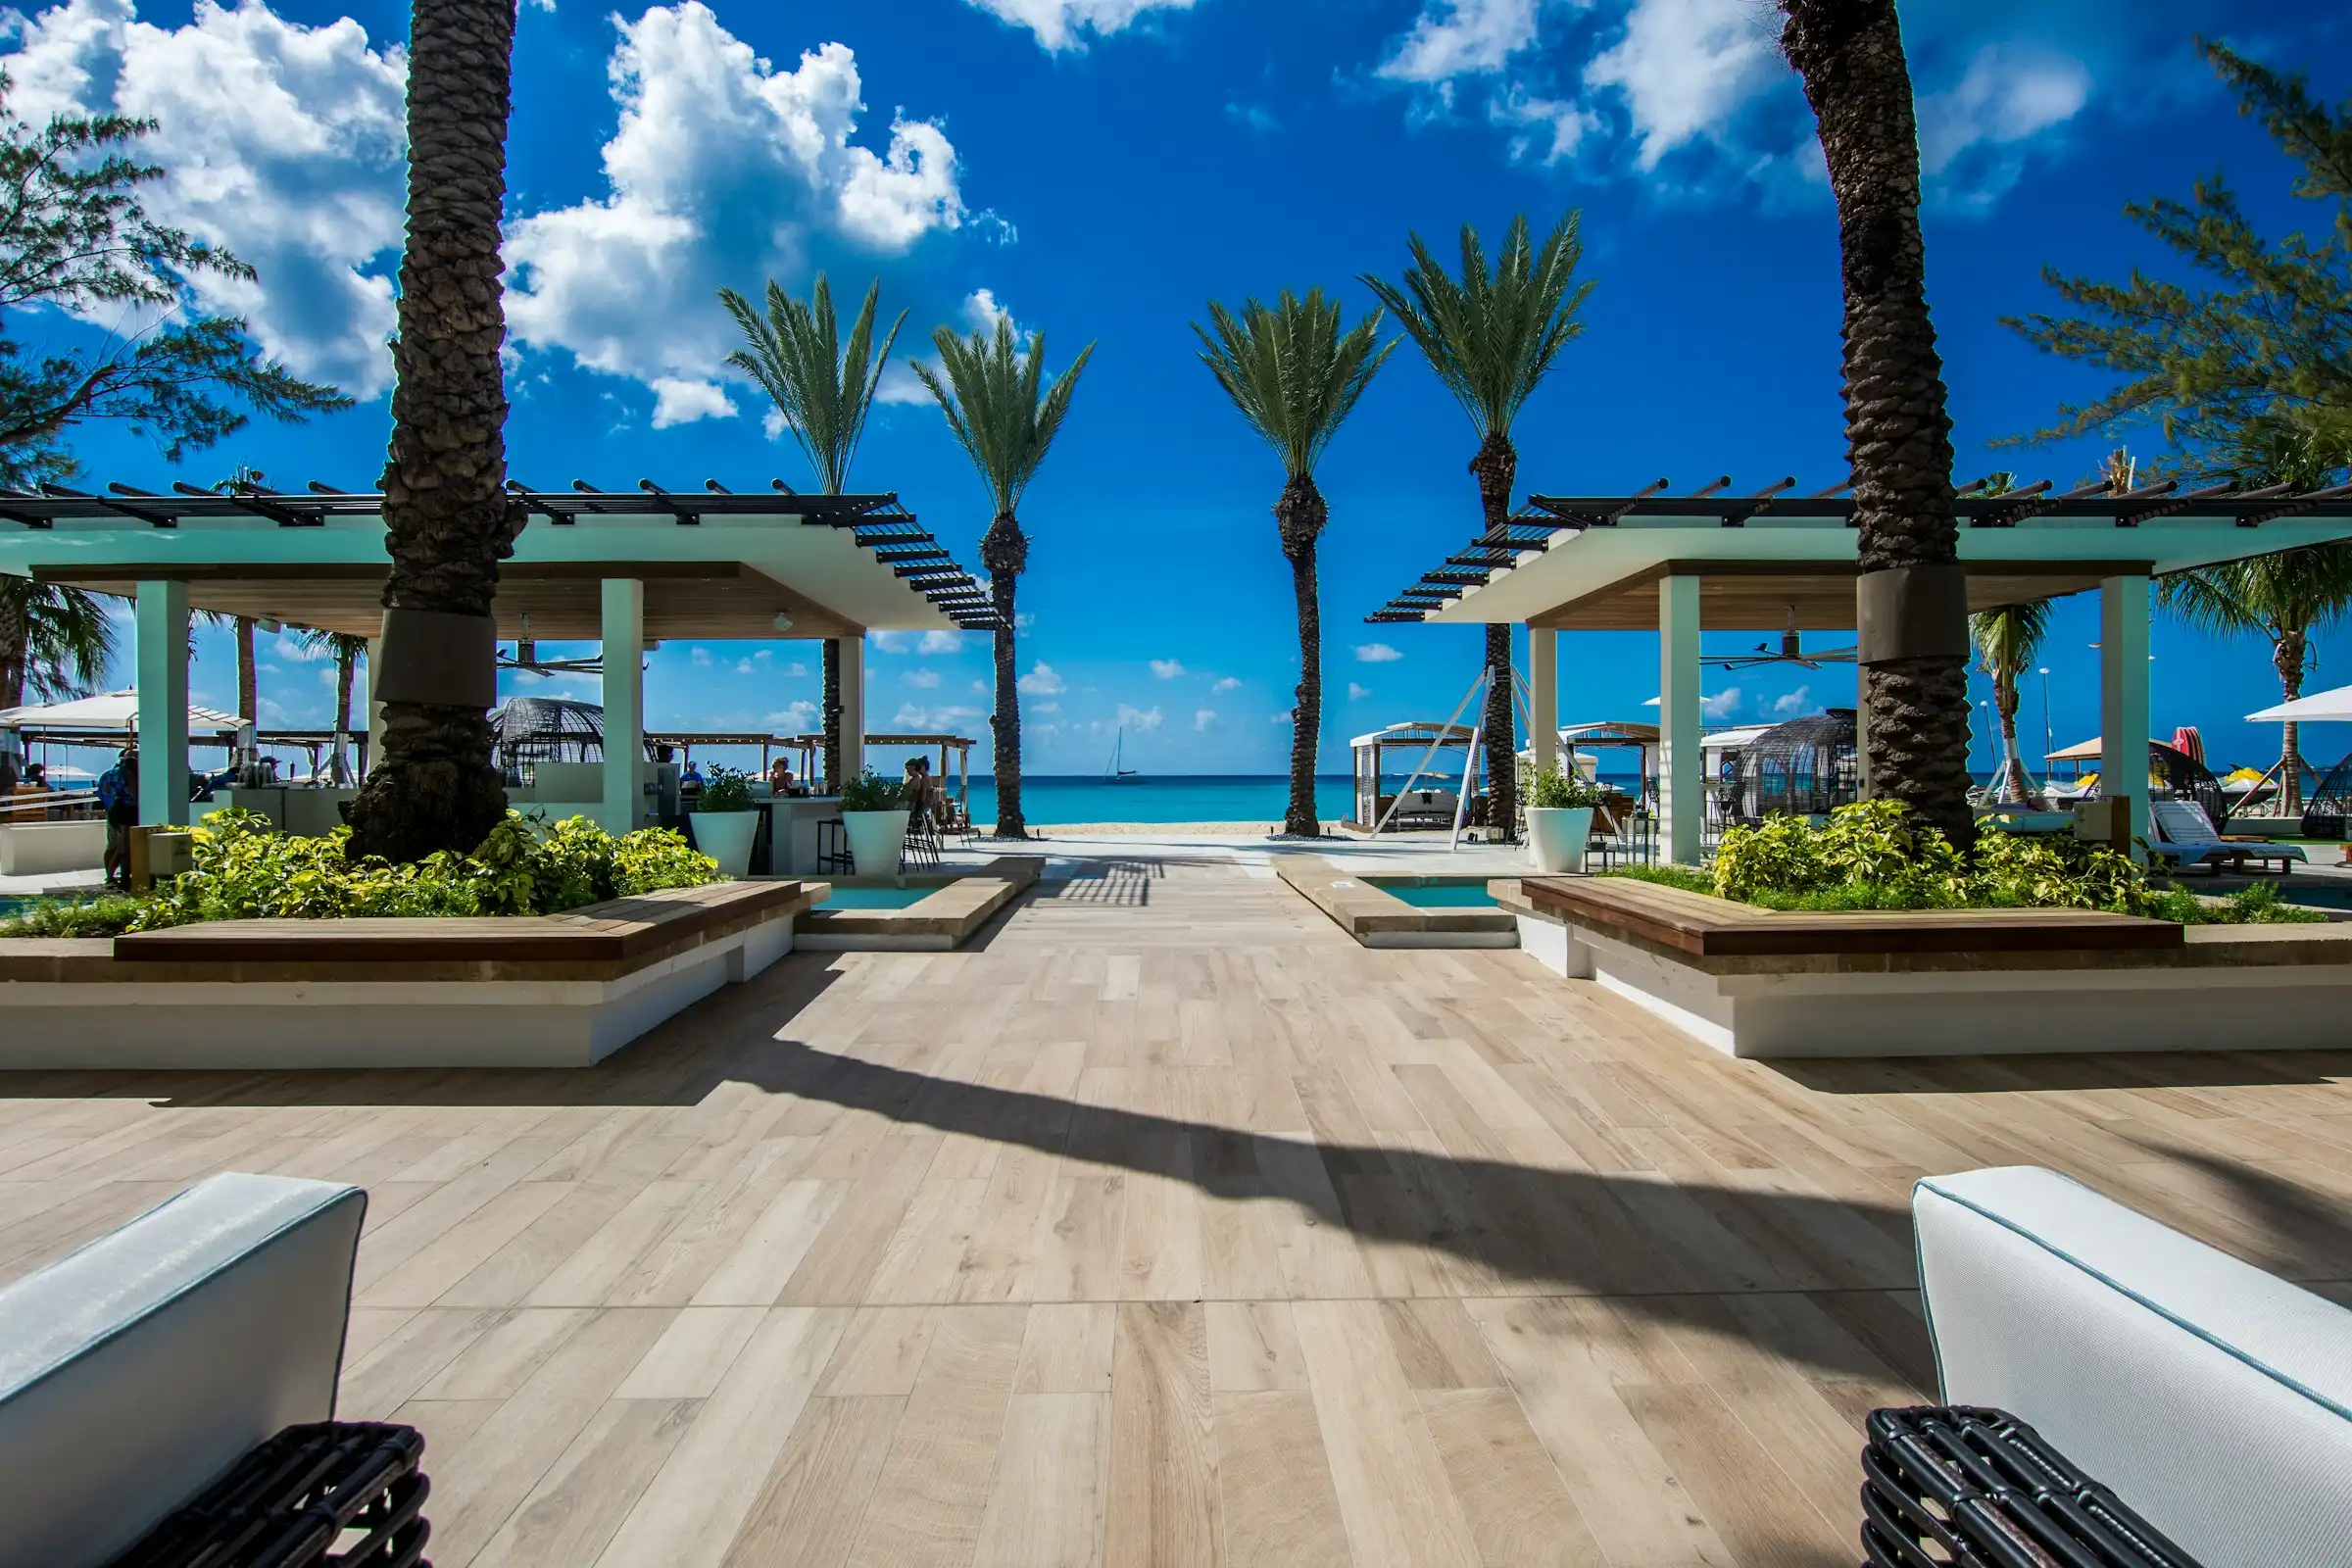 A beautiful beach resort in Grand Cayman